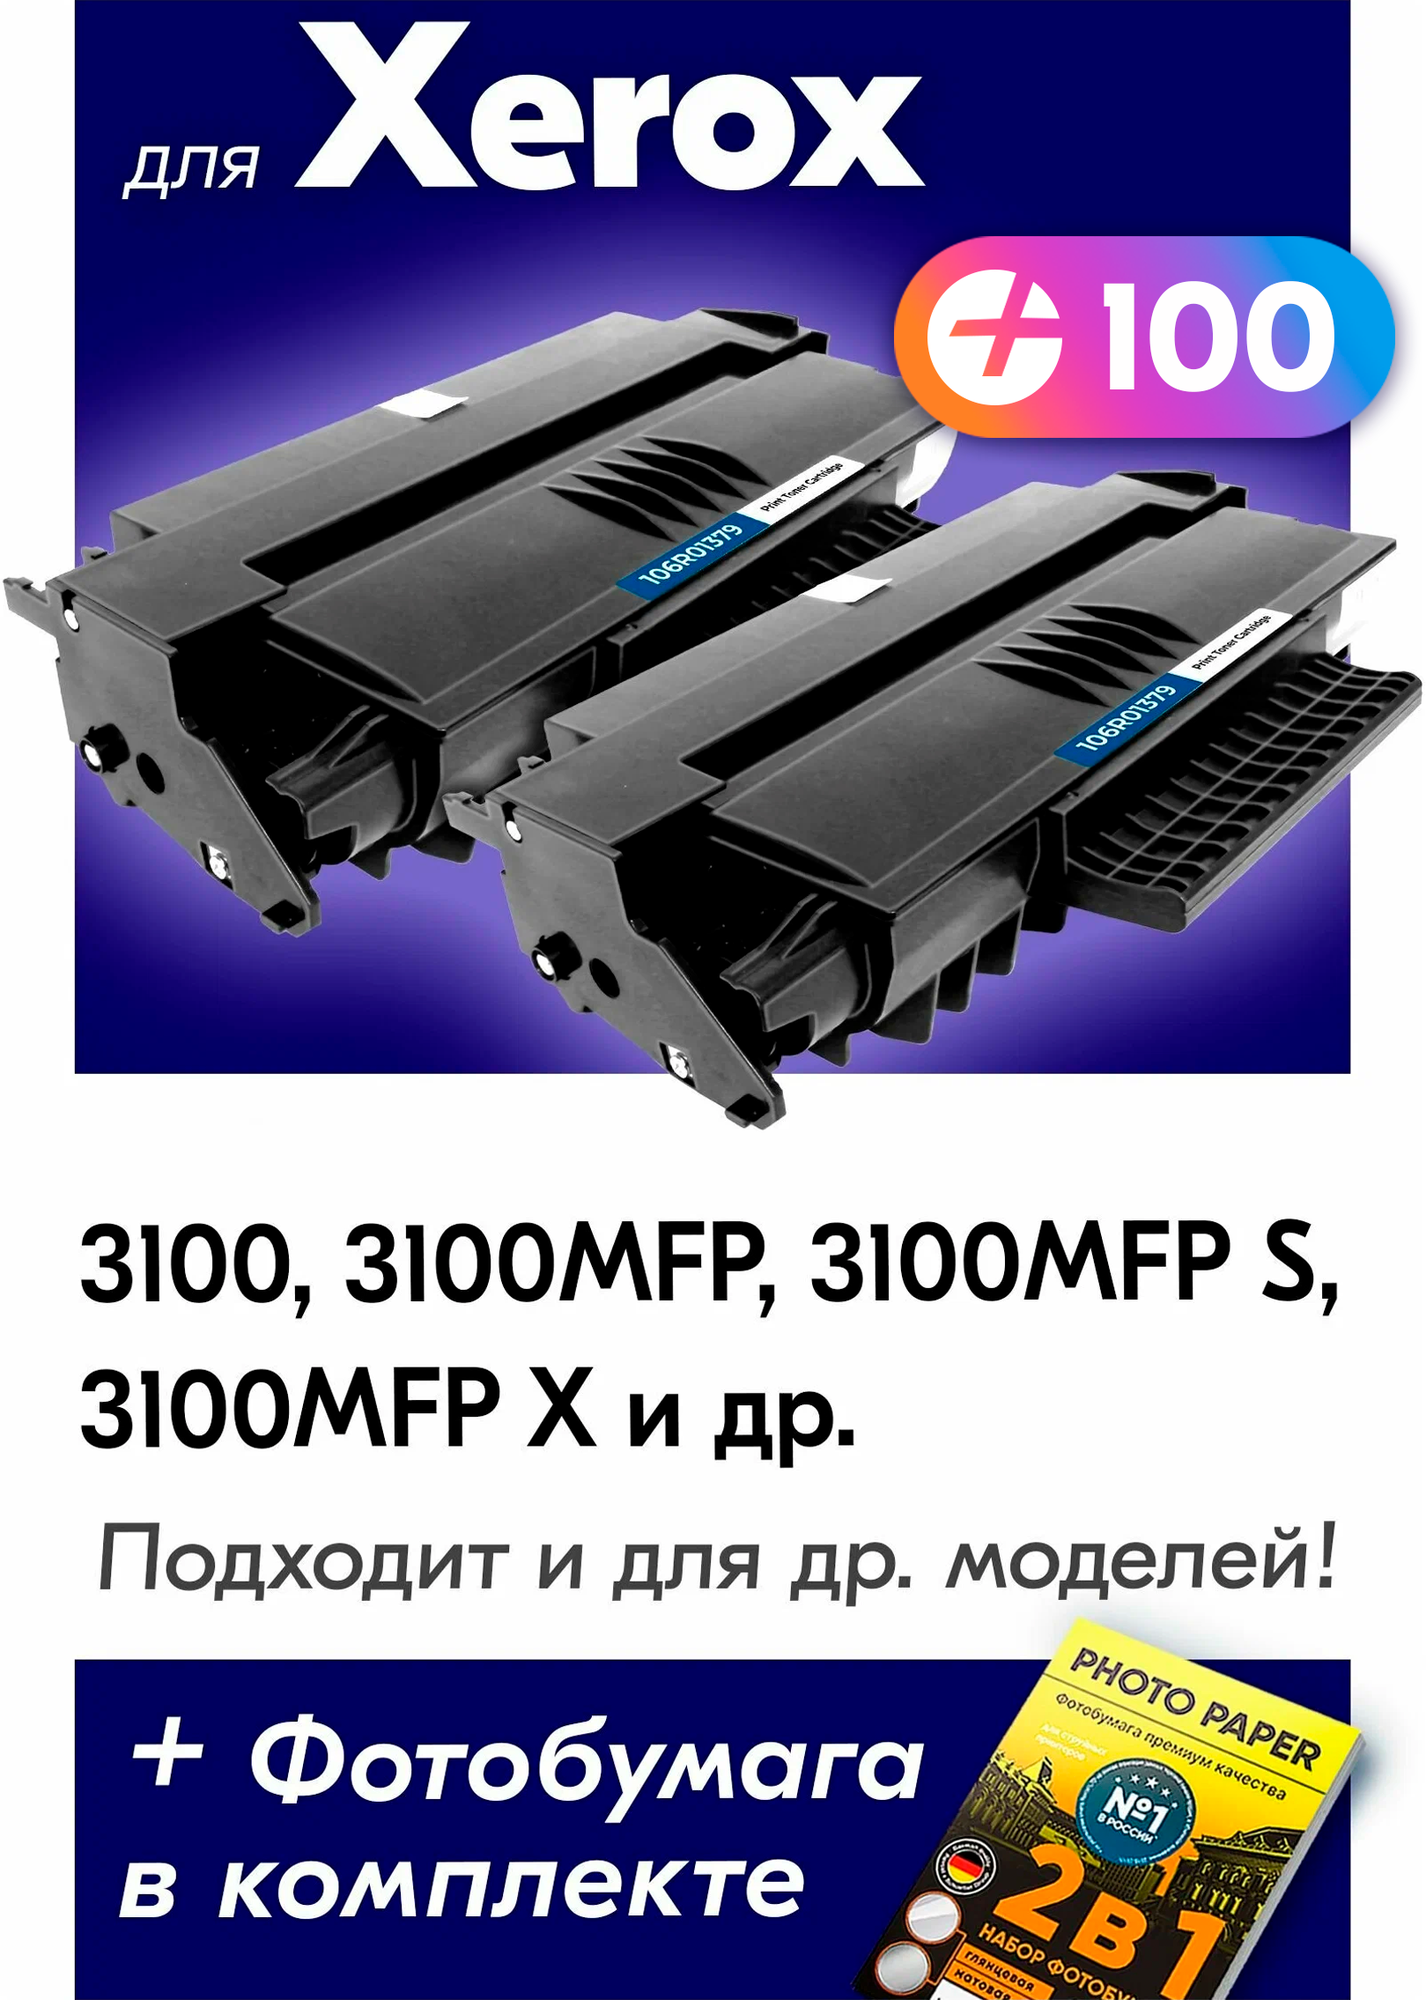 Лазерные картриджи для Xerox 106R01379, Xerox Phaser 3100, 3100MFP, 3100MFP S, 3100MFP X, с краской (тонером) черные новые заправляемые, 12000 копий